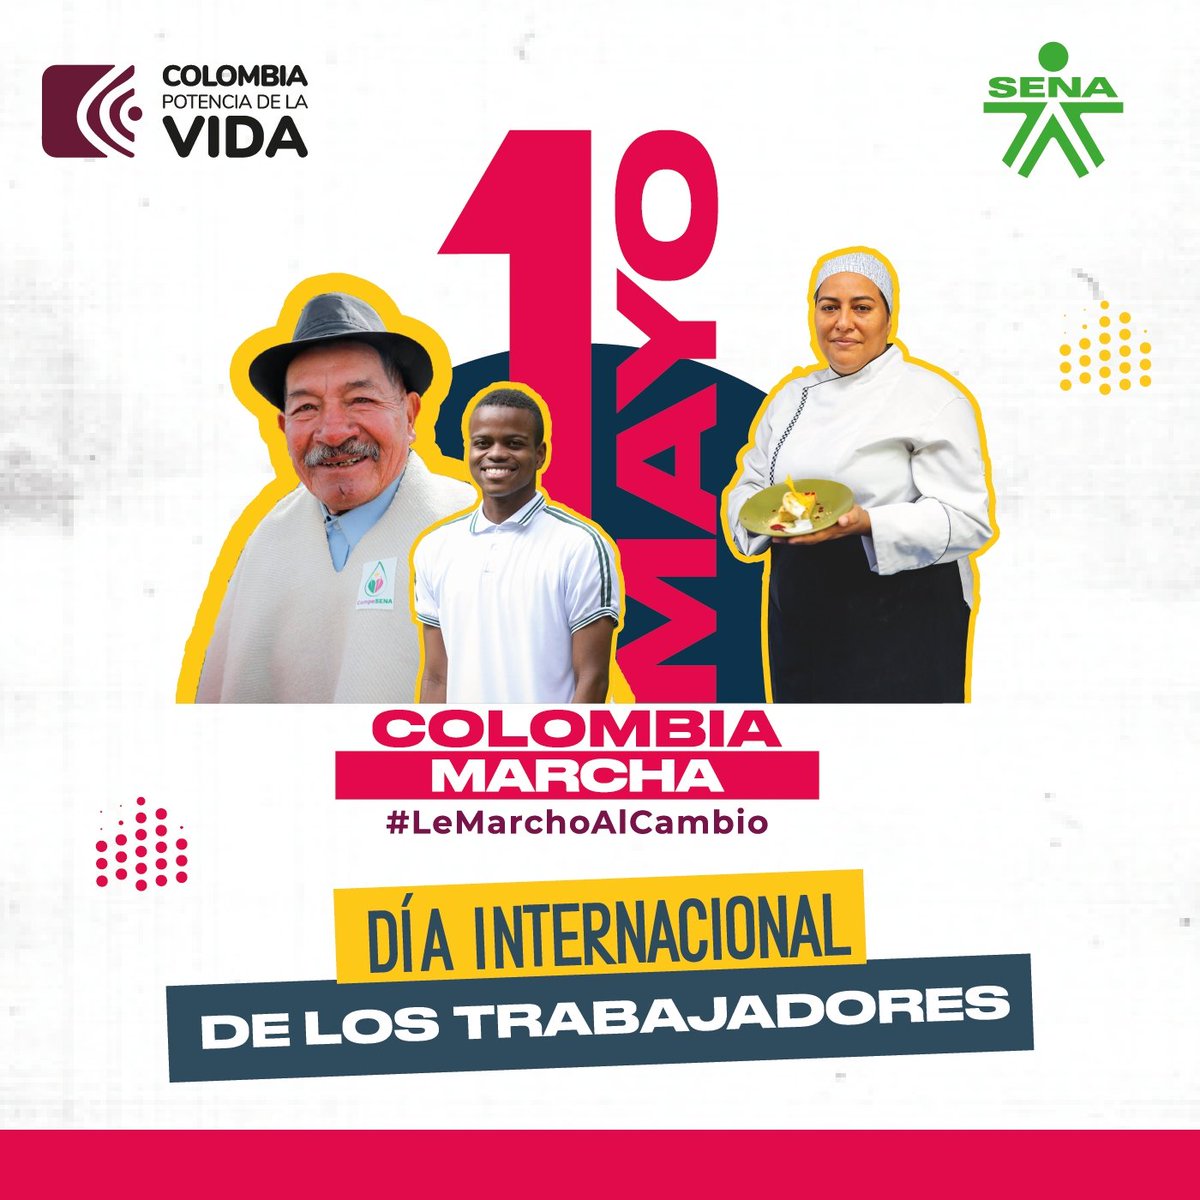 Buenos días a todas las trabajadoras y los trabajadores colombianos 🇨🇴 Hoy #1Mayo nos unimos a la conmemoración del Día Internacional de los Trabajadores. Gracias por contribuir a la transformación social y el progreso del país 💪. ¡#LeMarchoAlCambio porque nuestro trabajo…